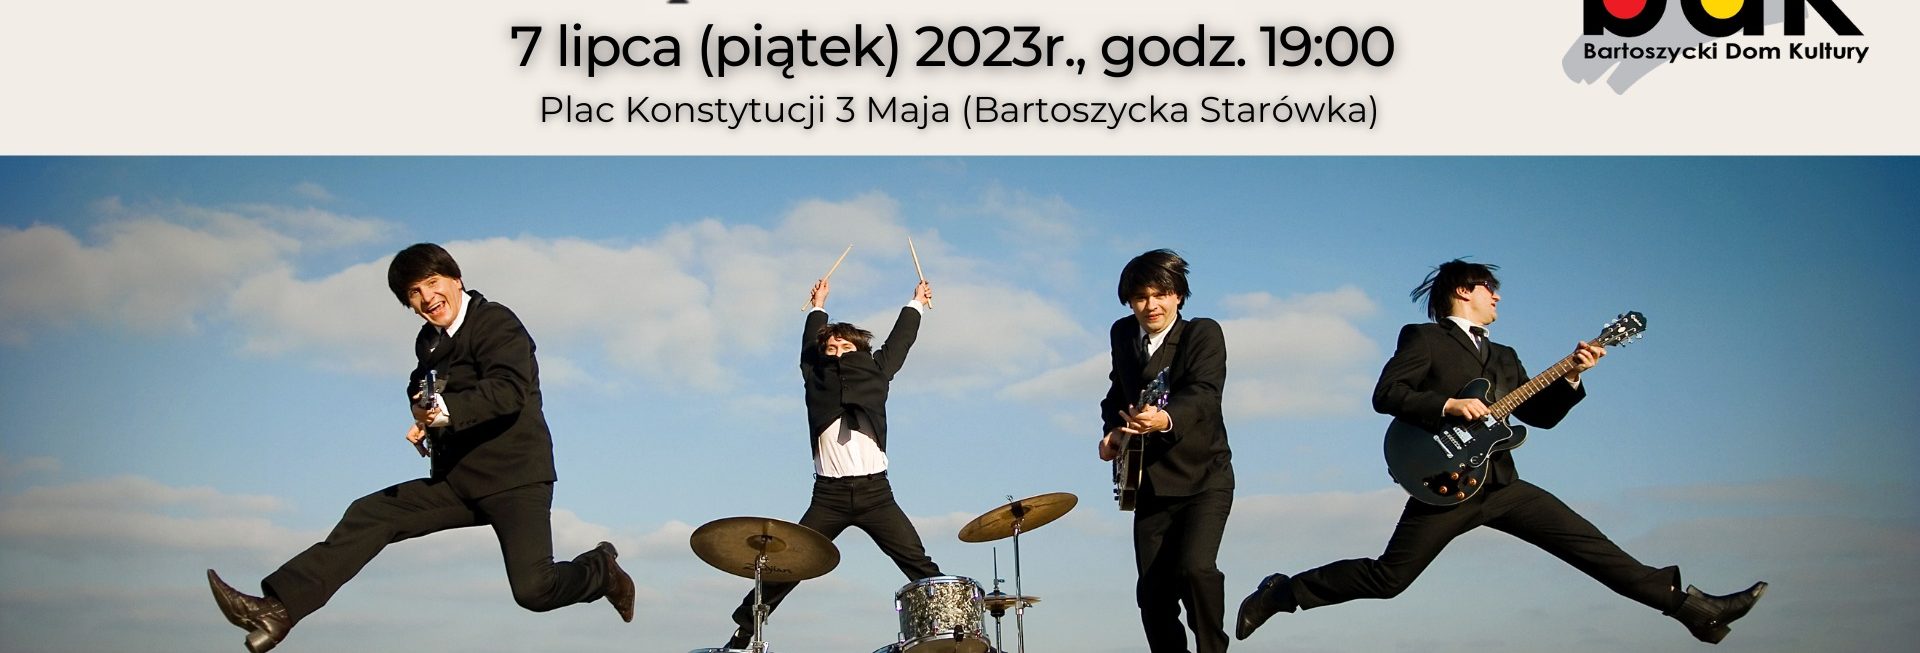 Plakat zapraszający w piątek 7 lipca 2023 r. do Bartoszyc na koncert grupy The Beatlmen Bartoszyce 2023.